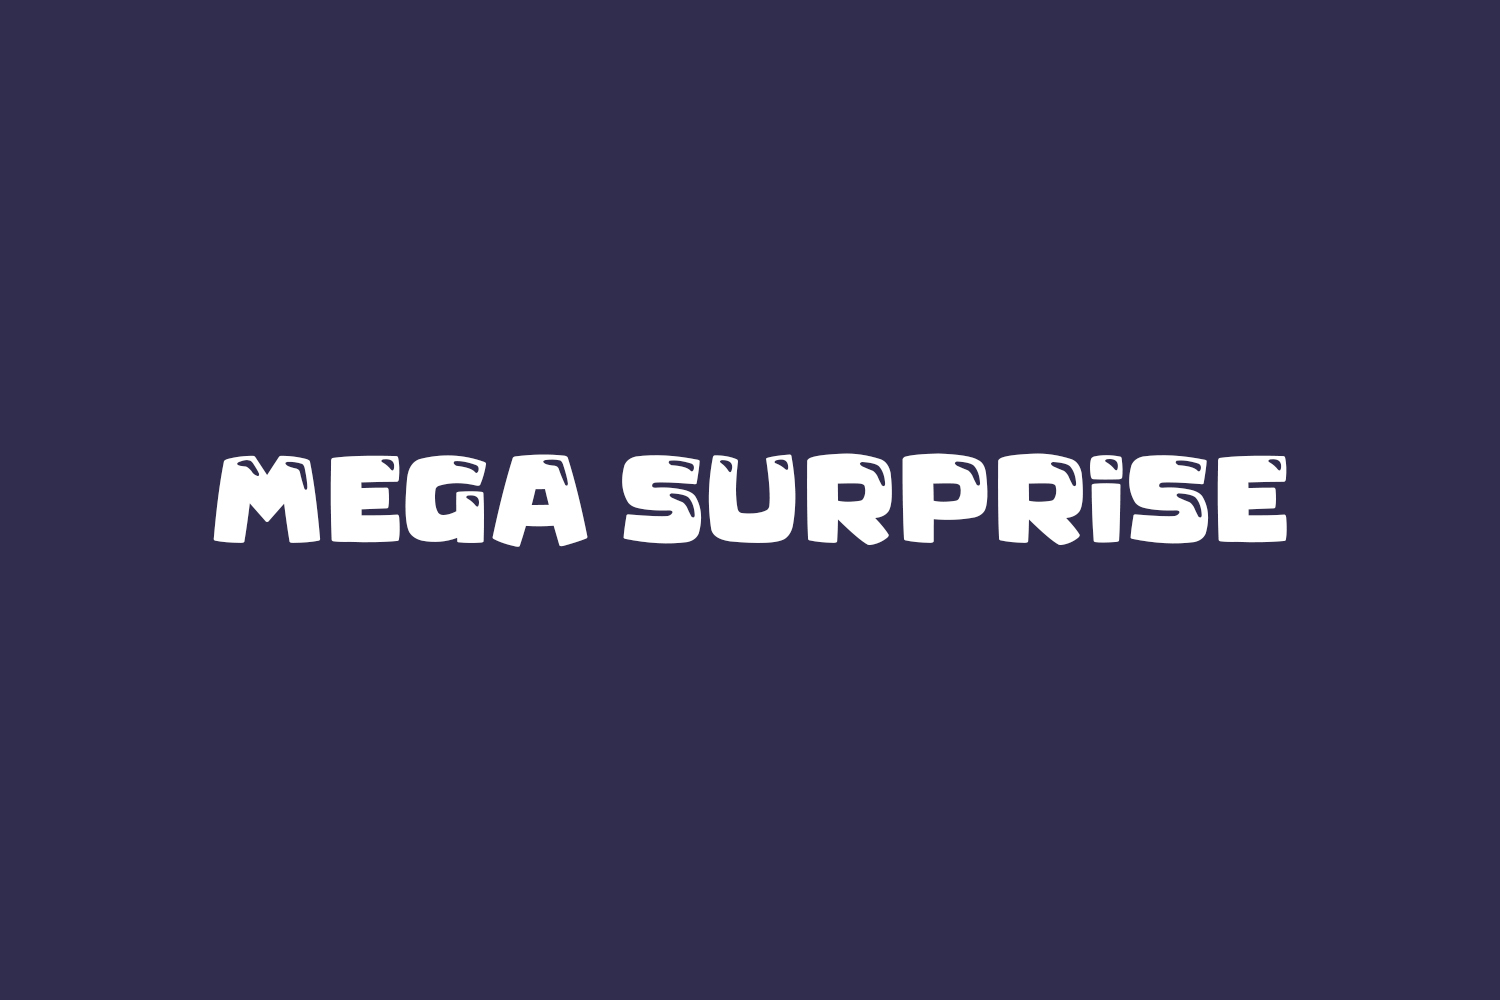 Mega Surprise Free Font